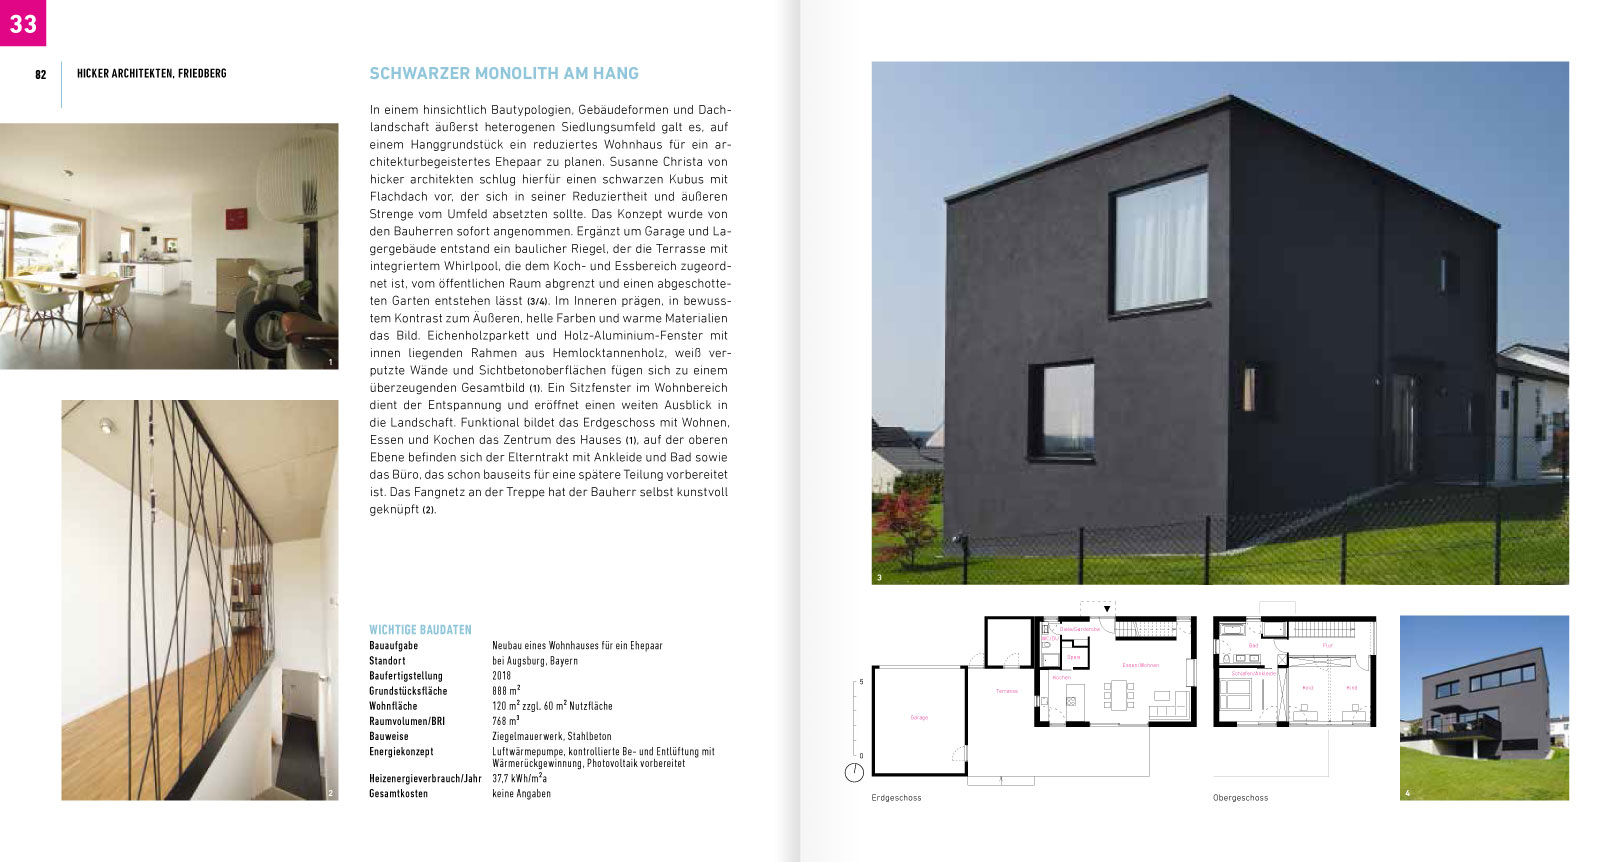 Hicker architekten - Haus L im Buch "100 TOP  Häuser" 2020 von Thomas Drexel